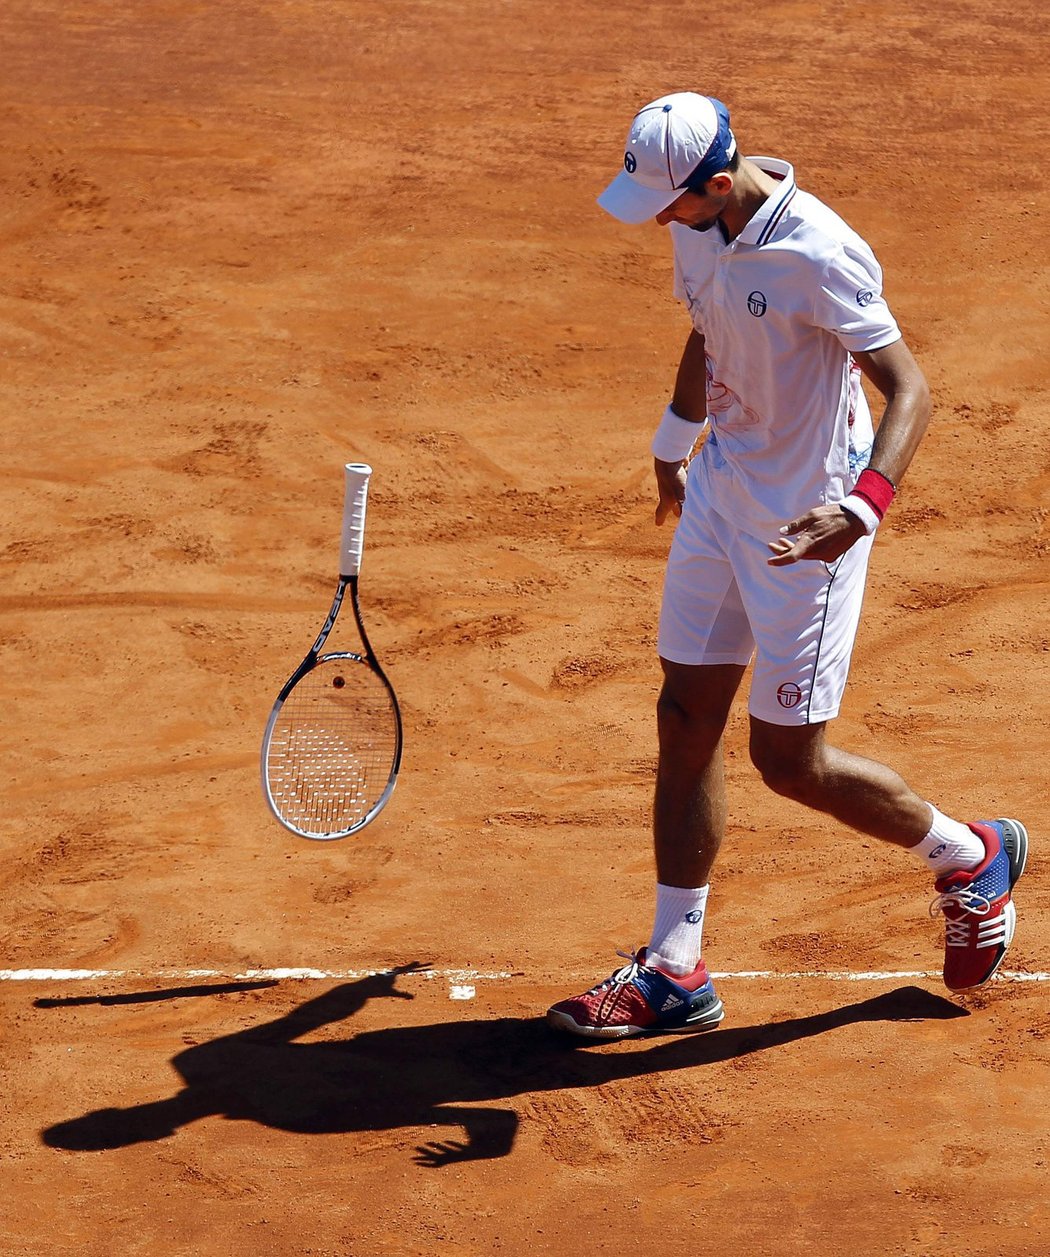 Novak Djokovič naštvaně hází raketou v zápase proti Tomáše Berdychovi